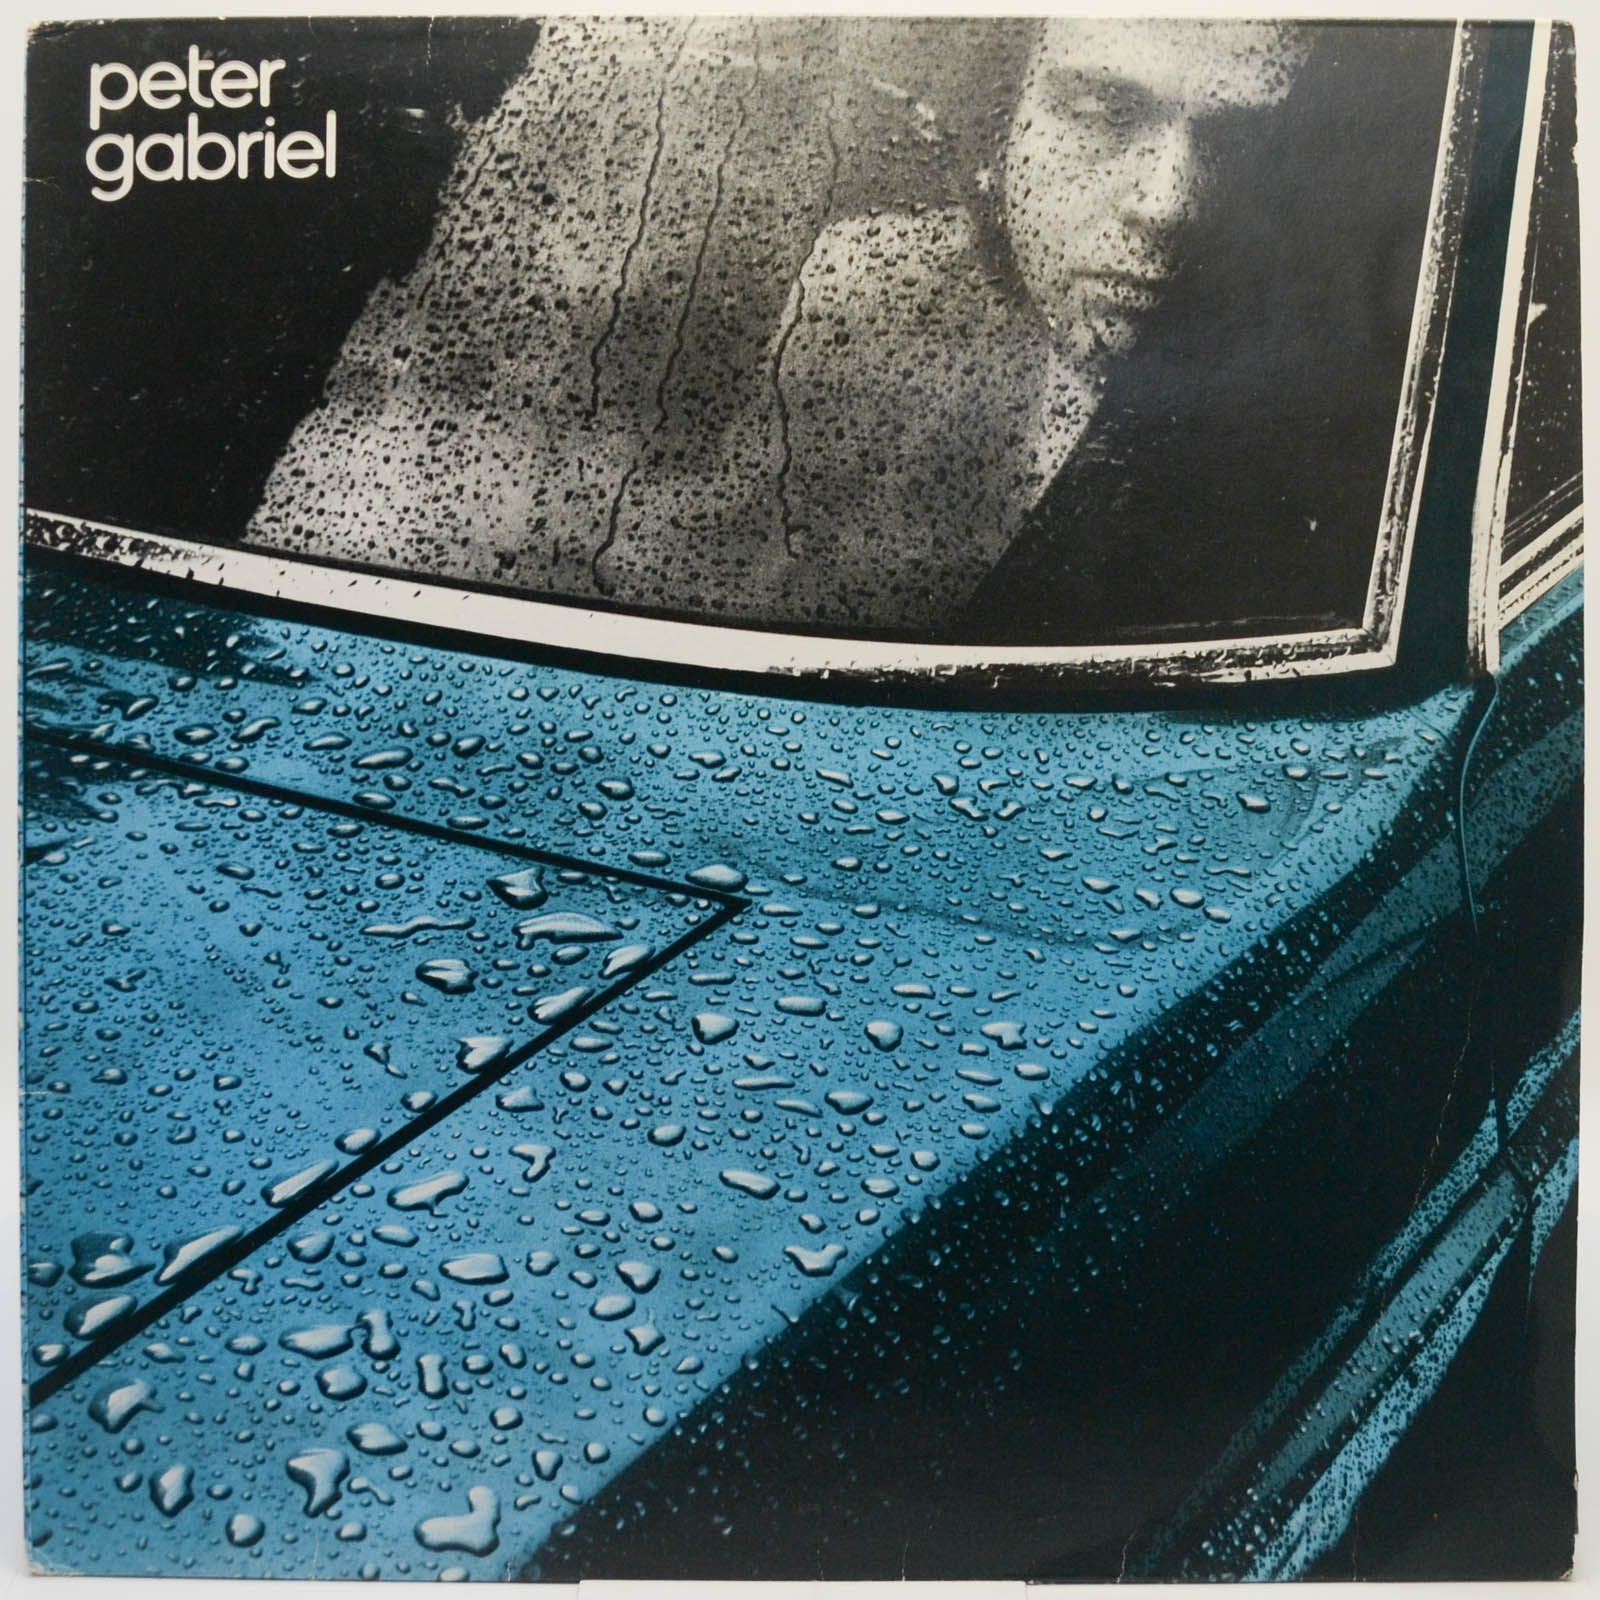 Peter Gabriel — Peter Gabriel, 1977